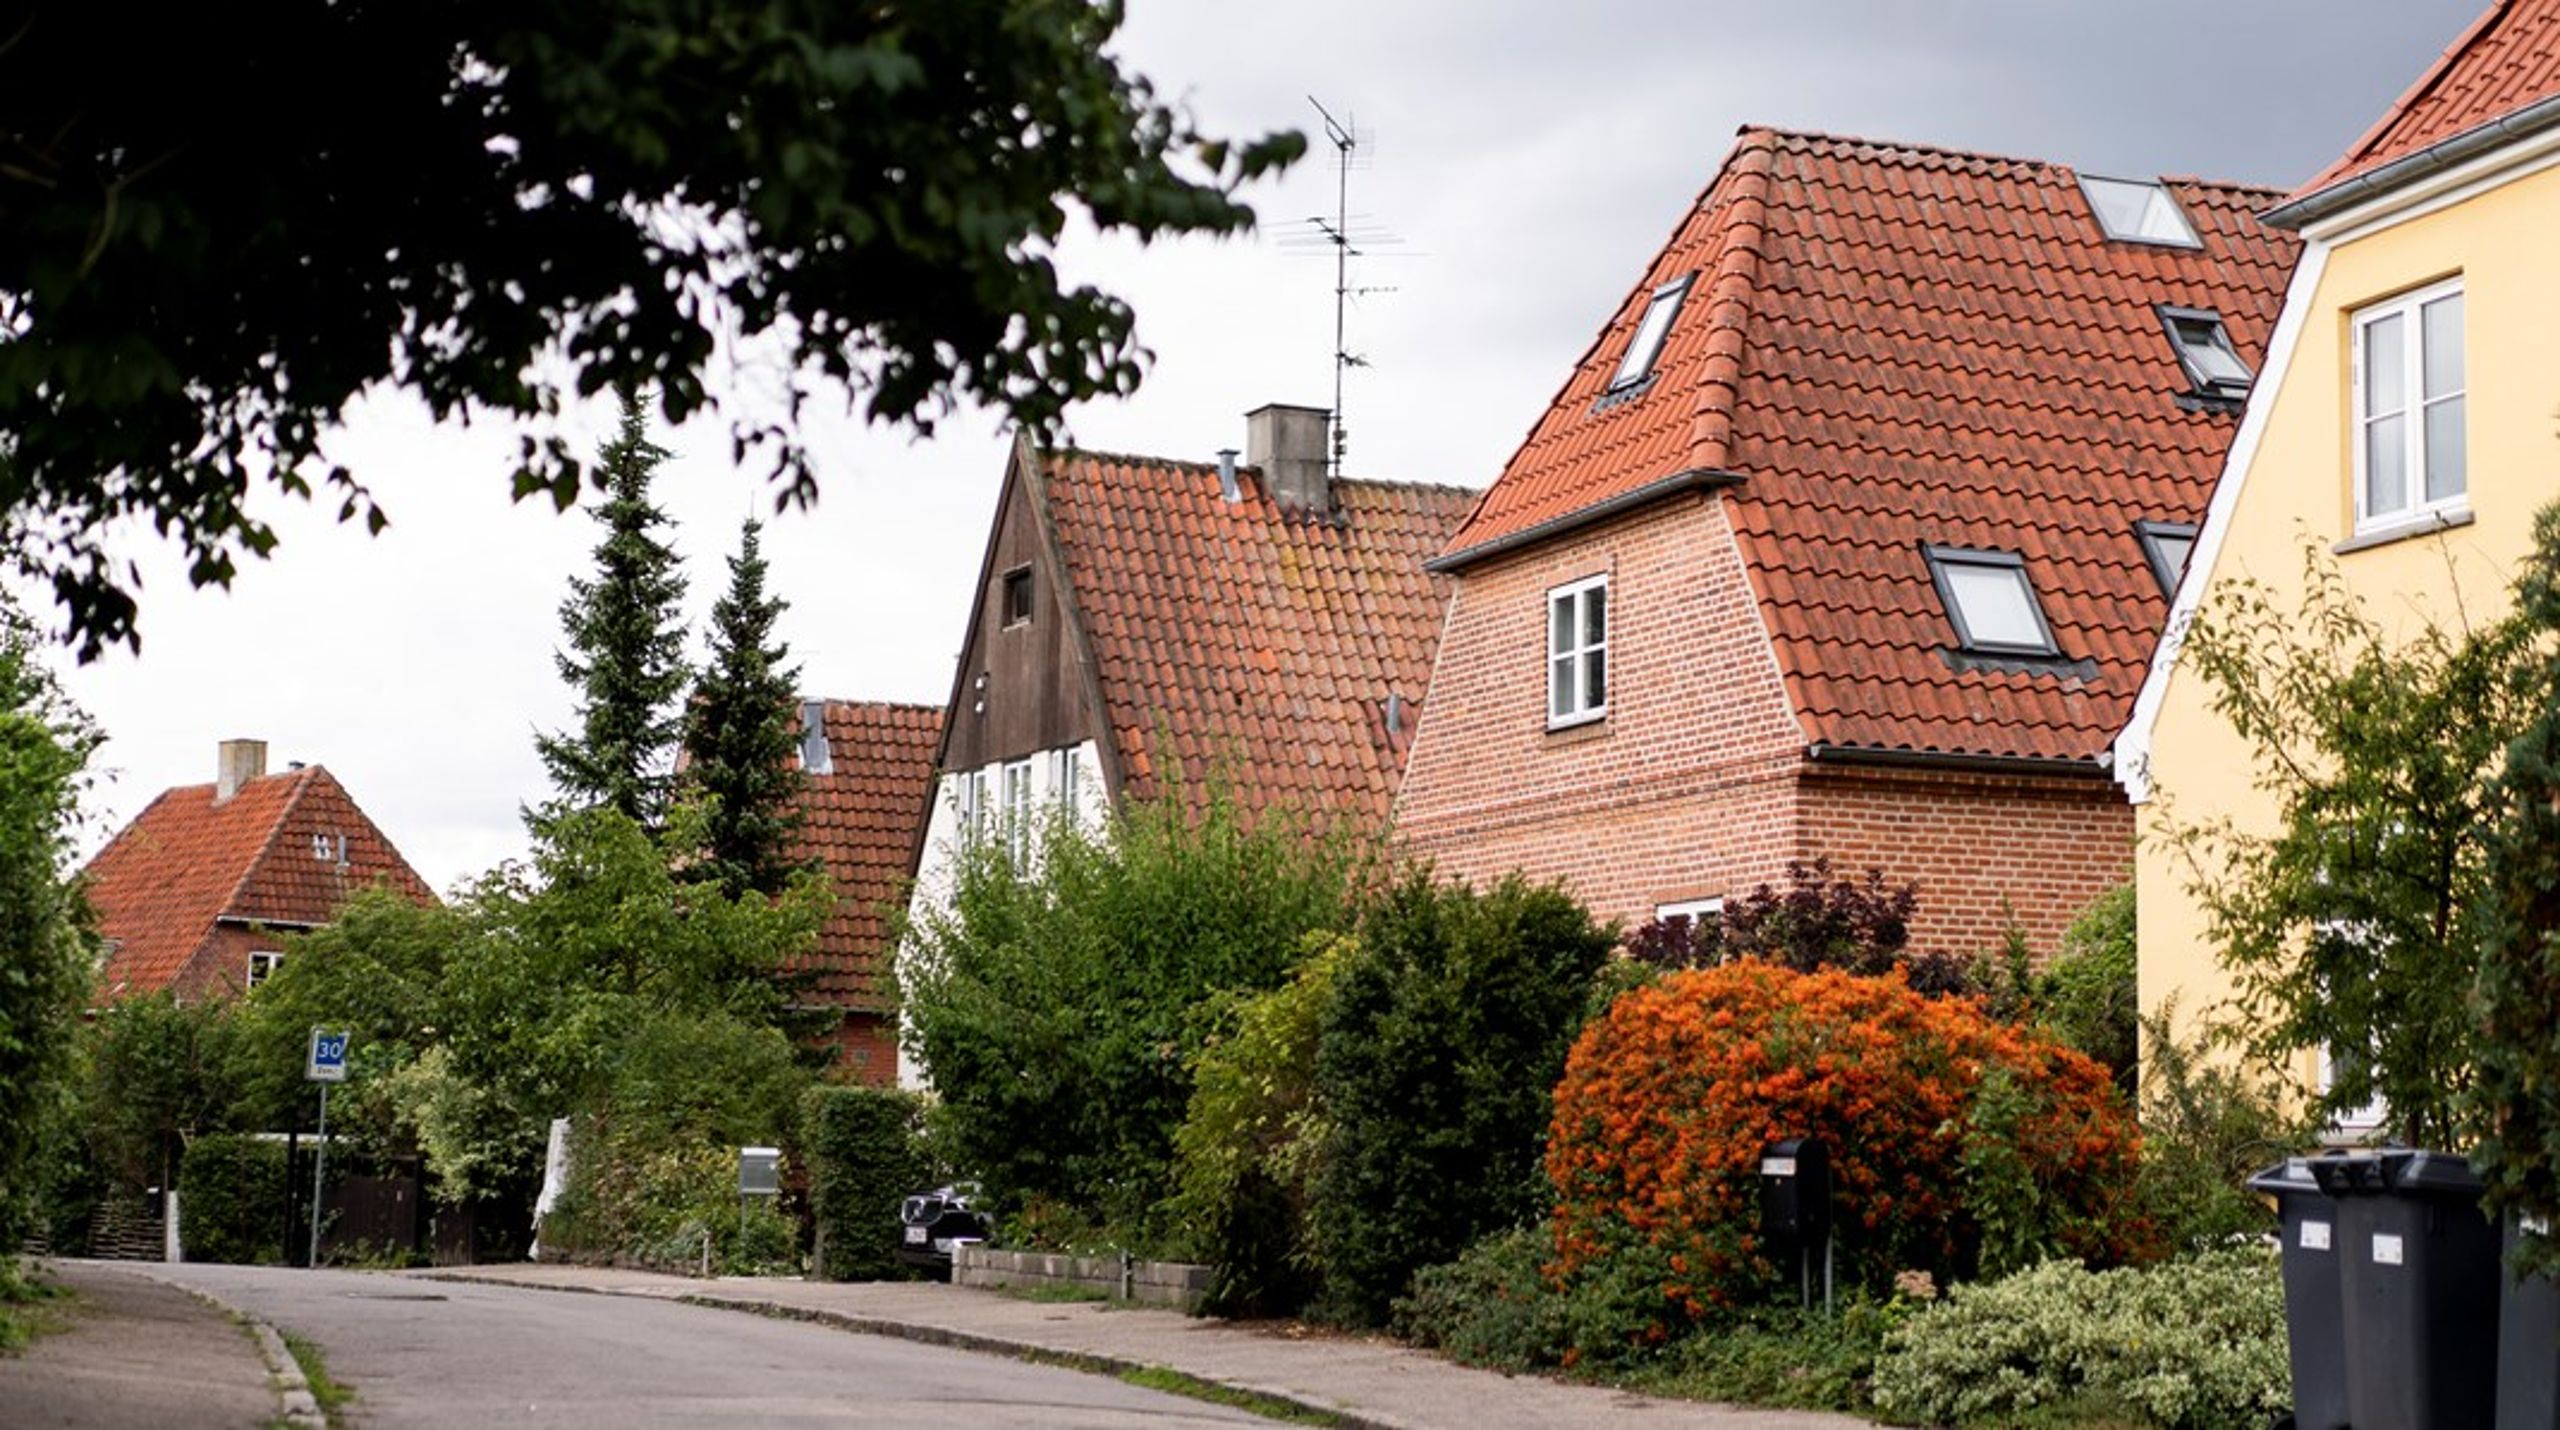 Økonomer forstår ikke, hvordan boligmarkedet fungerer, mener professor Hans Skifter Andersen.